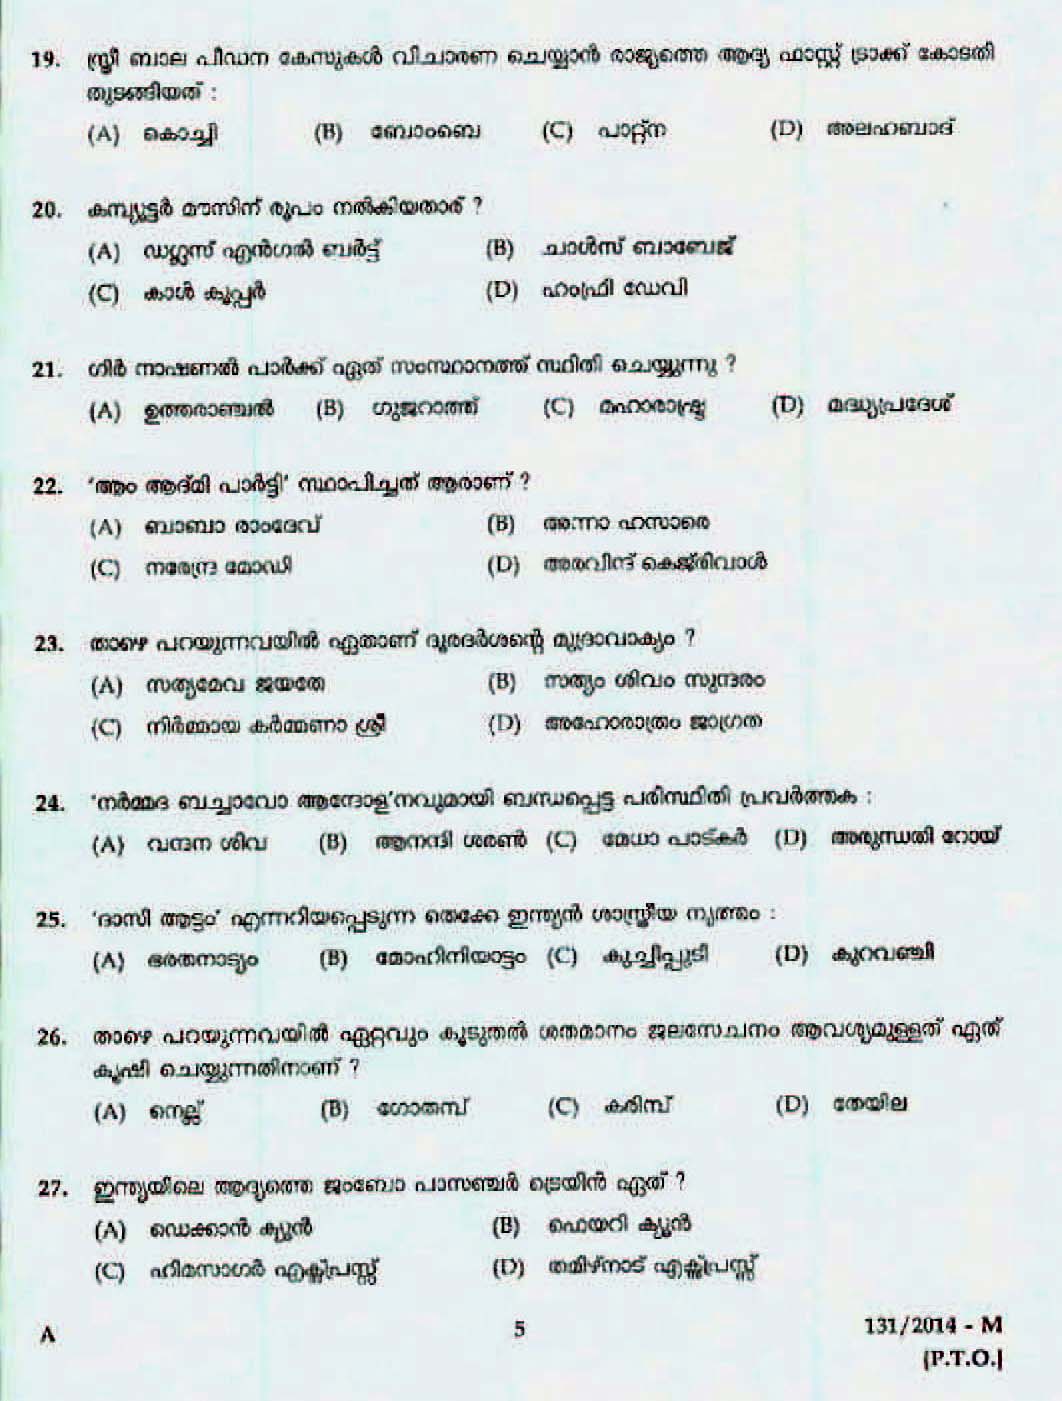 Kerala Last Grade Servants Exam 2014 Question Paper Code 1312014 M 3